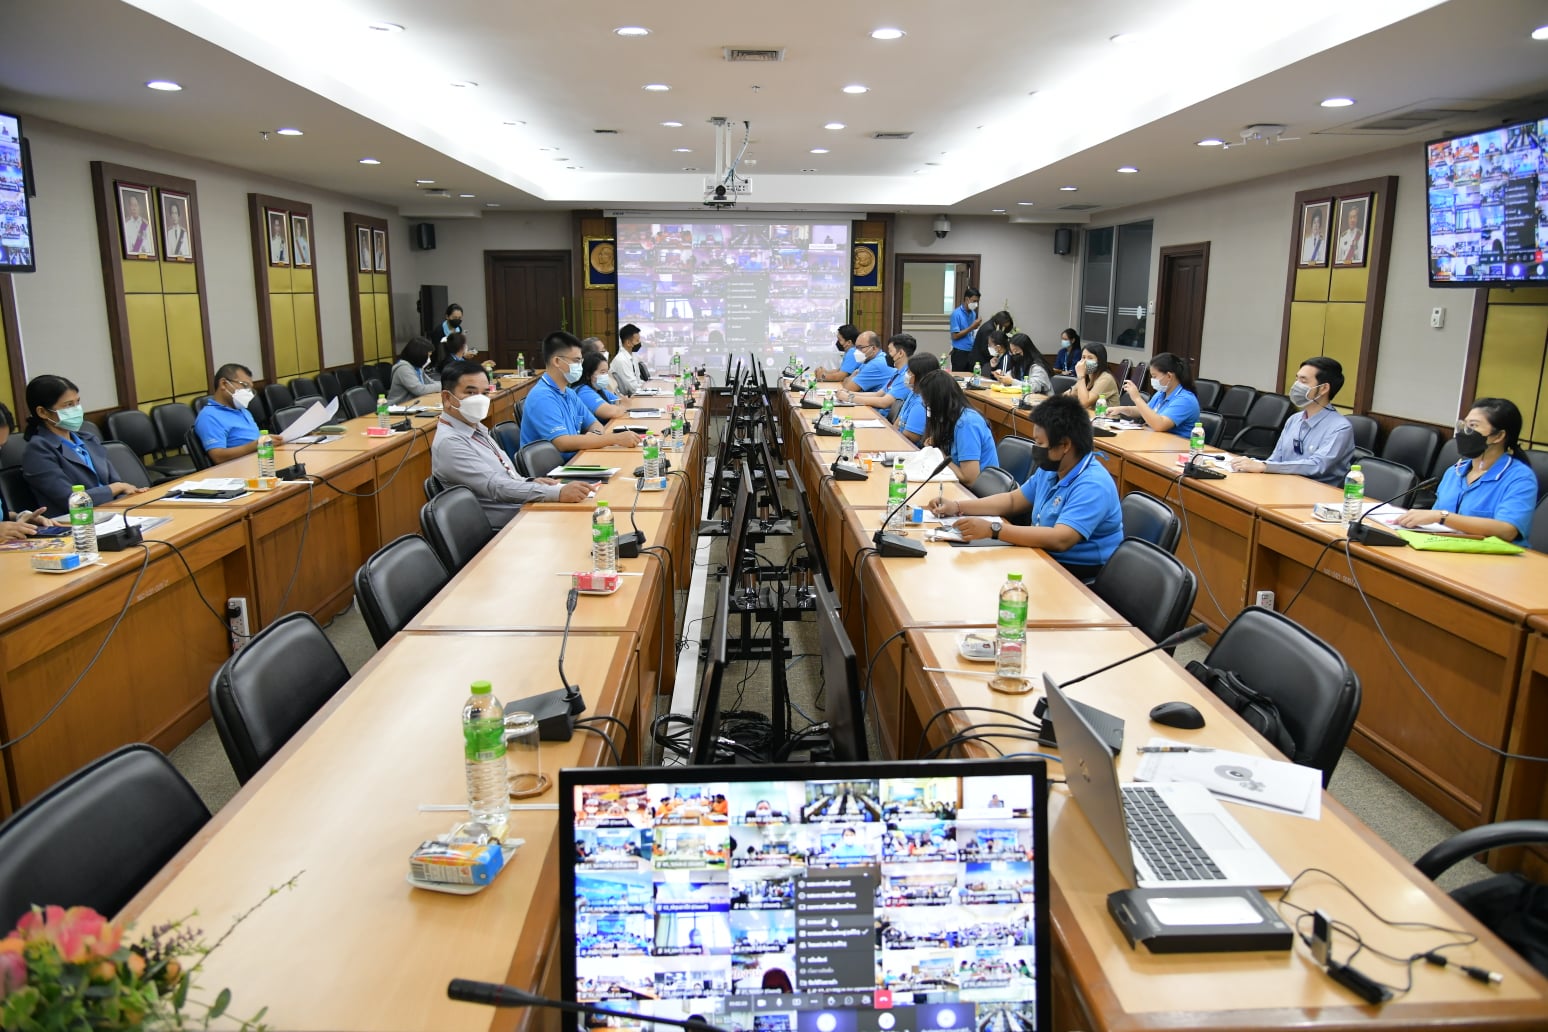 การประชุมชี้แจง ระเบียบวิธีปฏิบัติงาน โครงการสำรวจผลกระทบจากสถานการณ์ การแพร่ระบาดของโรคโควิด -19 ต่อครัวเรือนในประเทศไทย พ.ศ. 2564